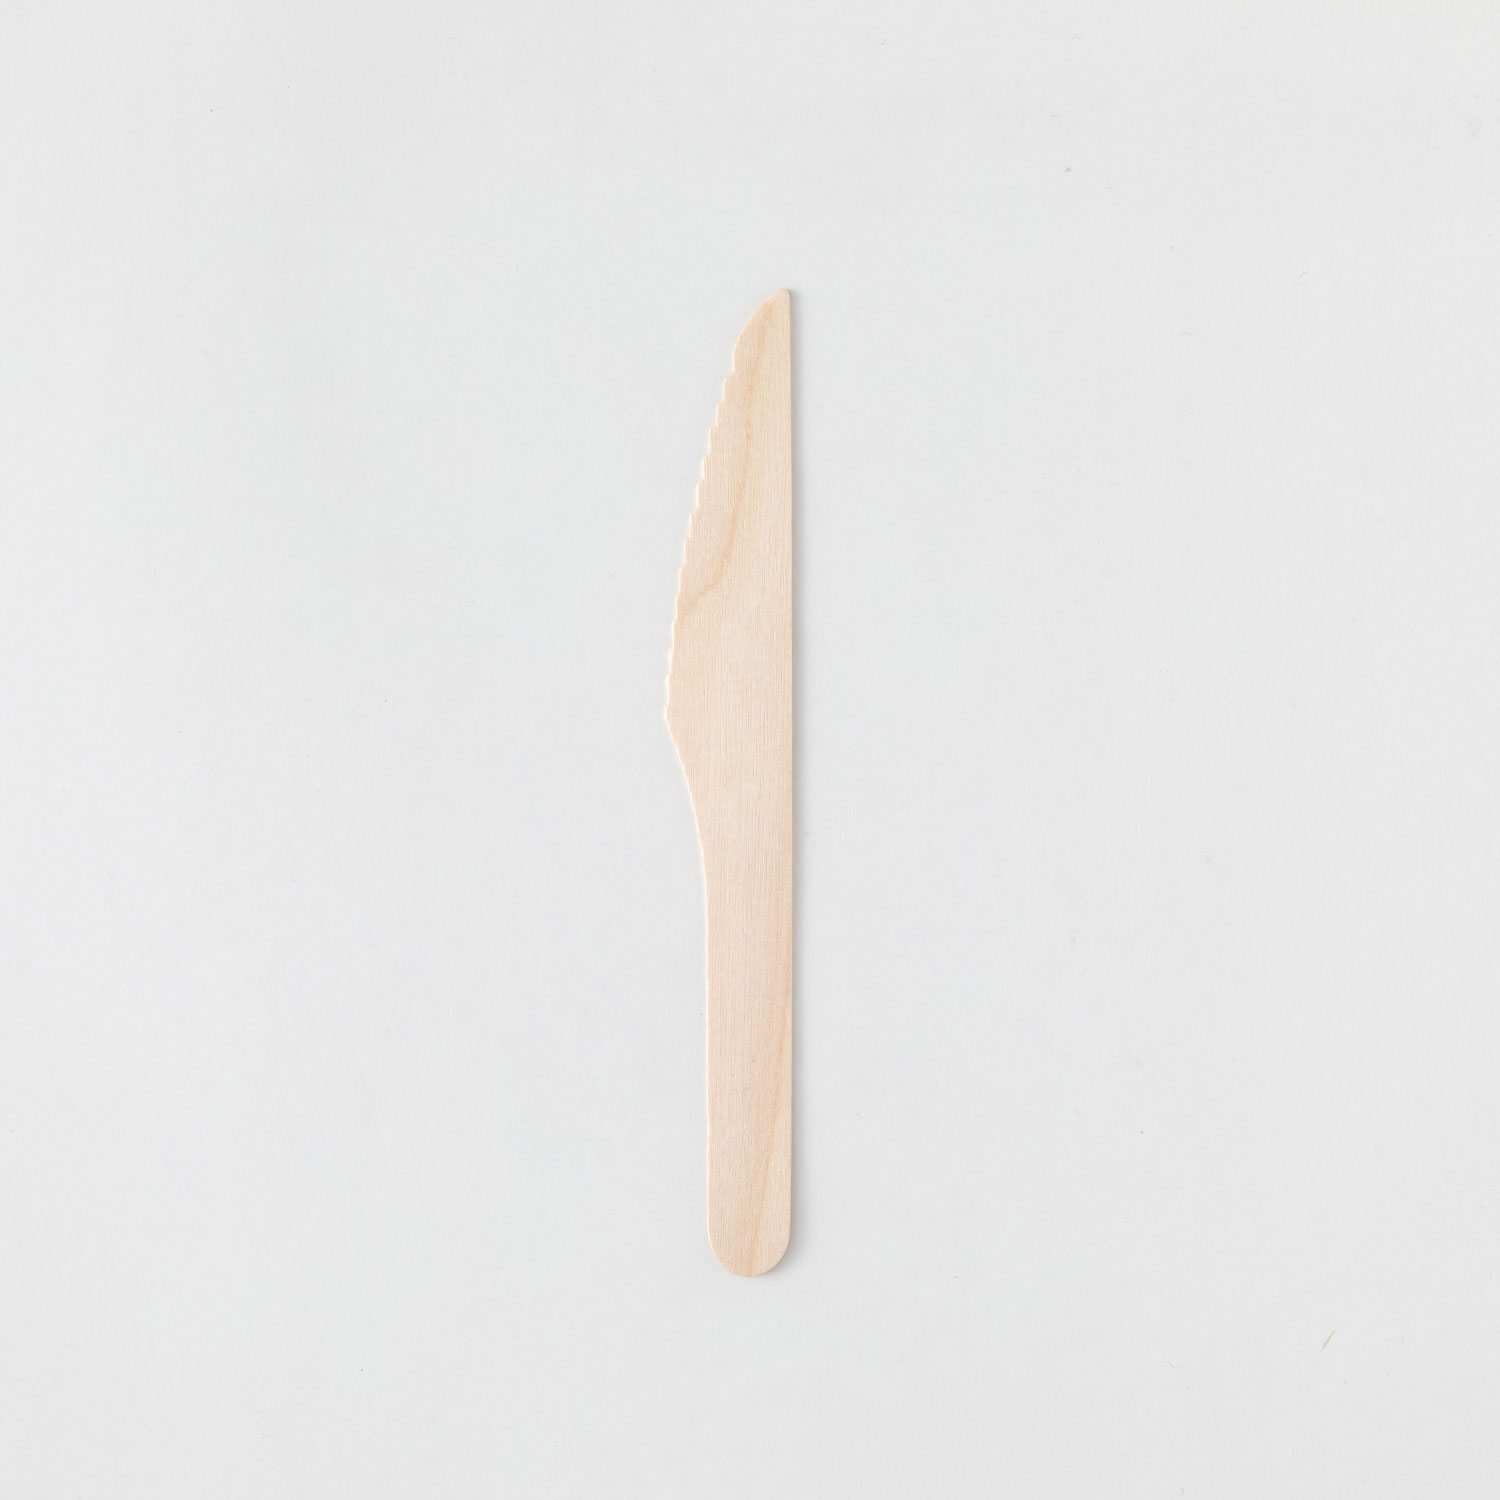 使い捨てフォーク 木製ナイフ160 バラ(100本入透明袋) アサヒグリーン